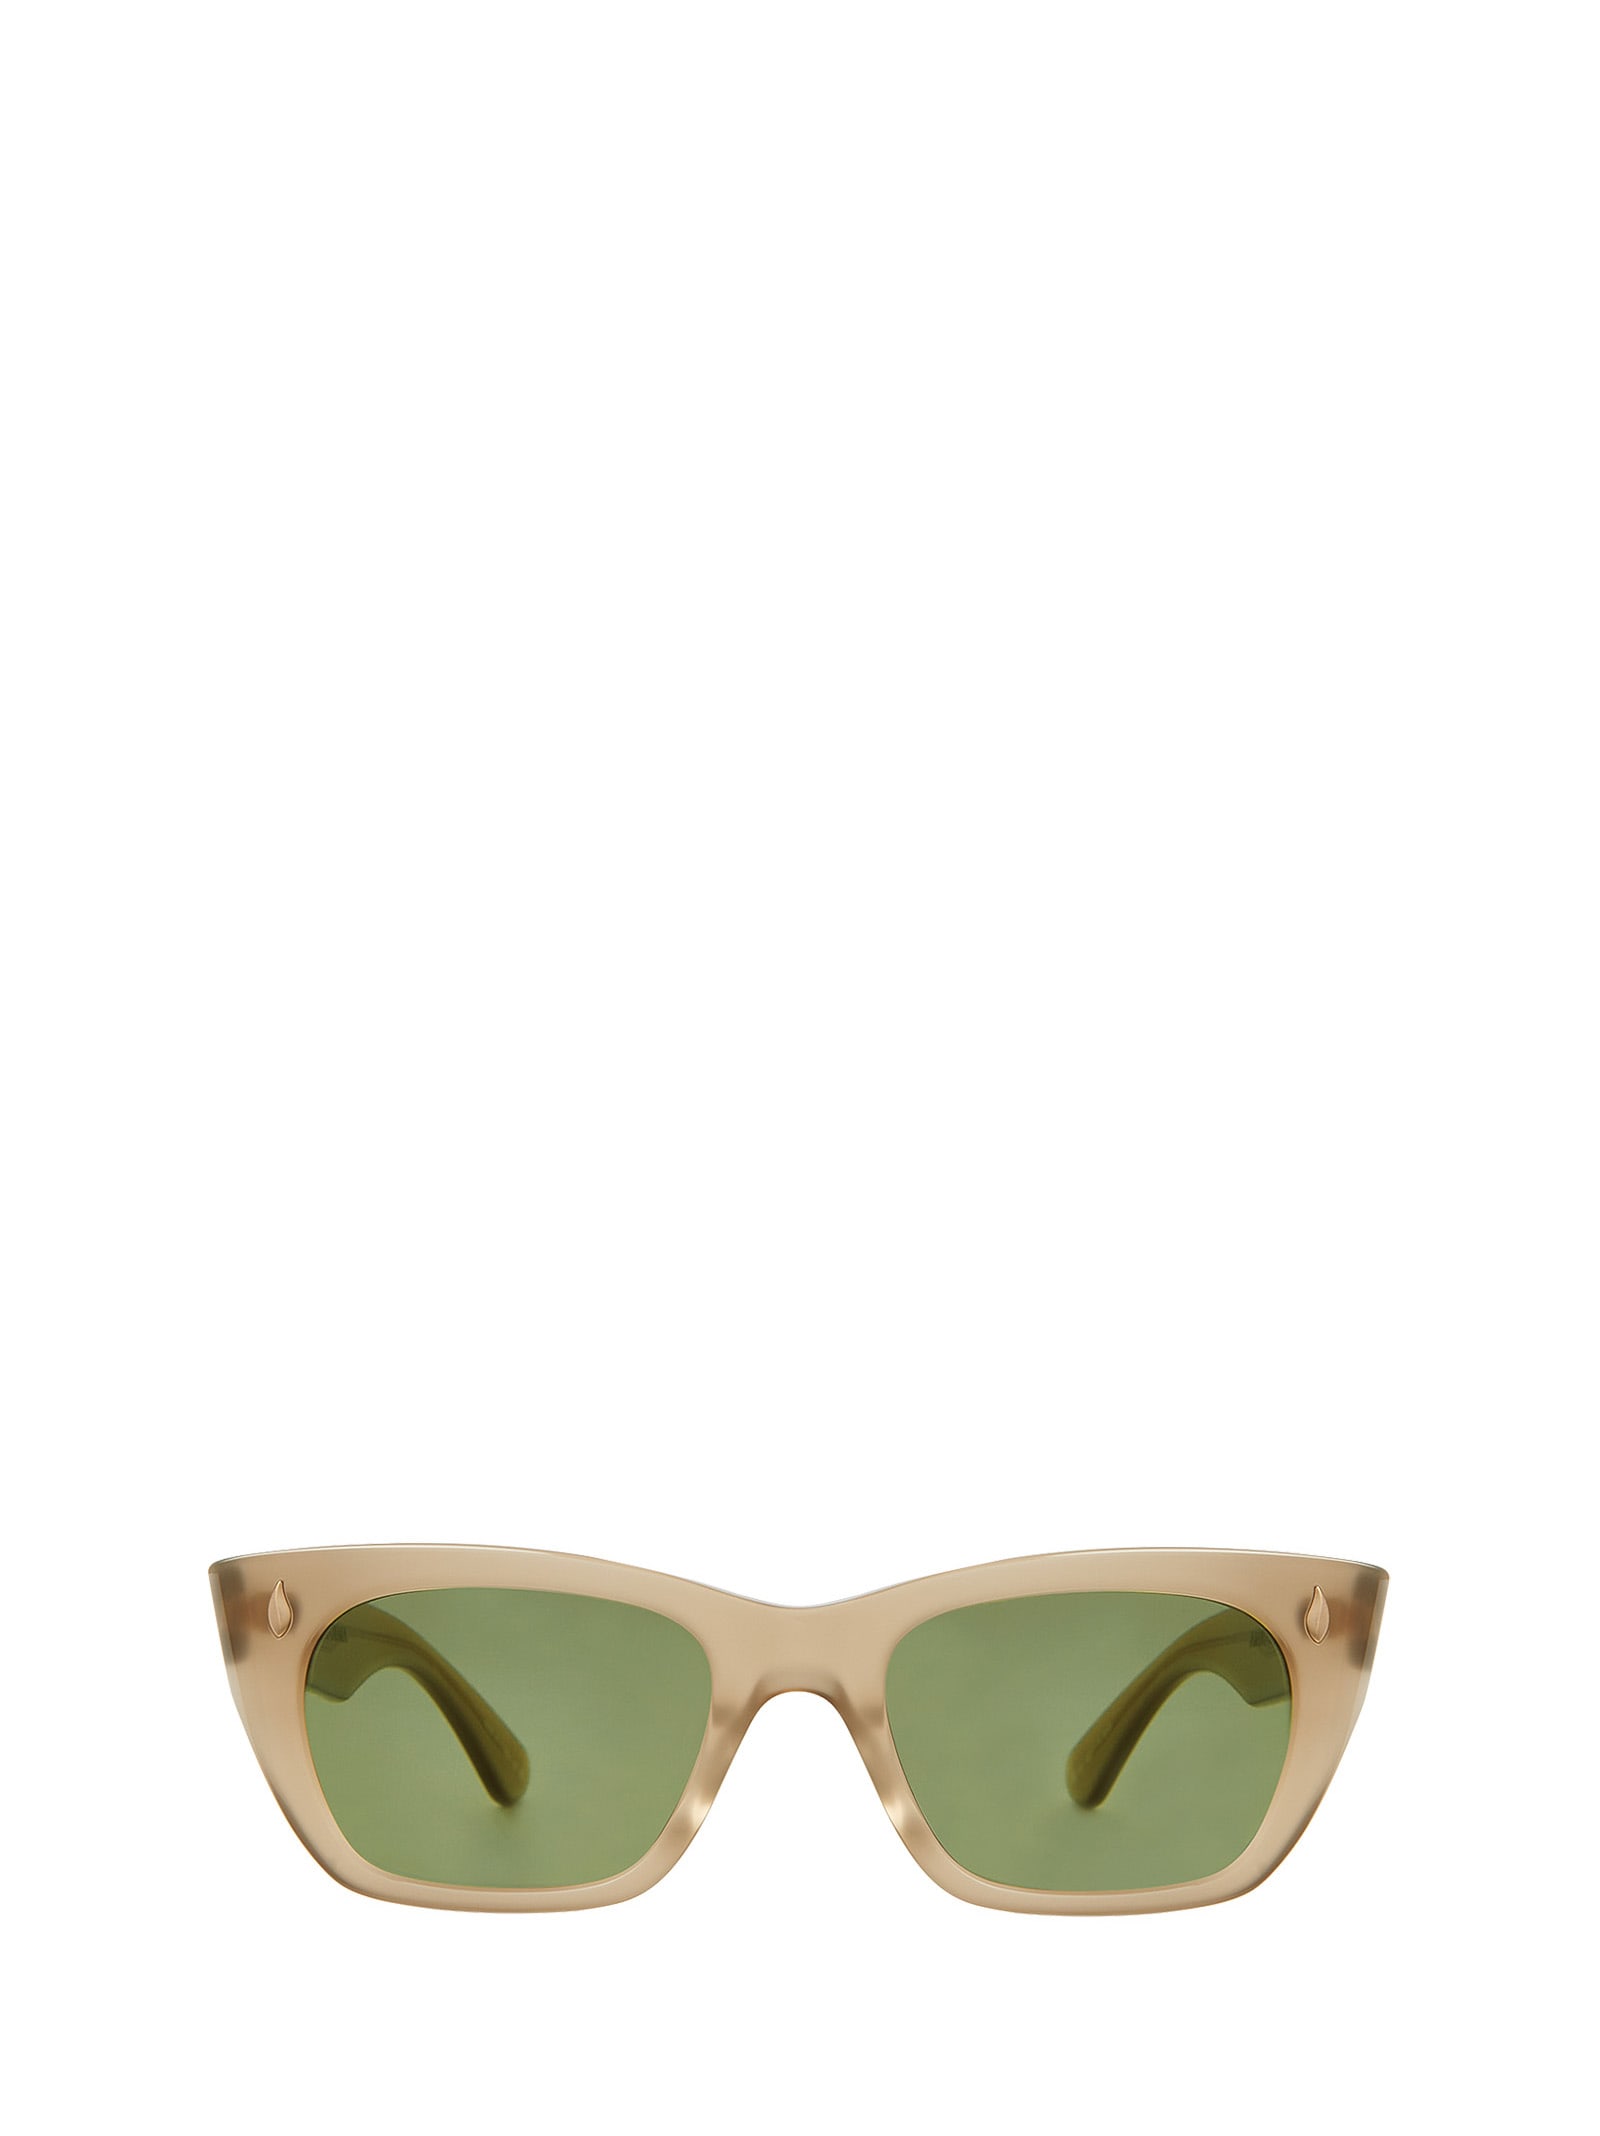 Webster Sun Chanterelle Sunglasses